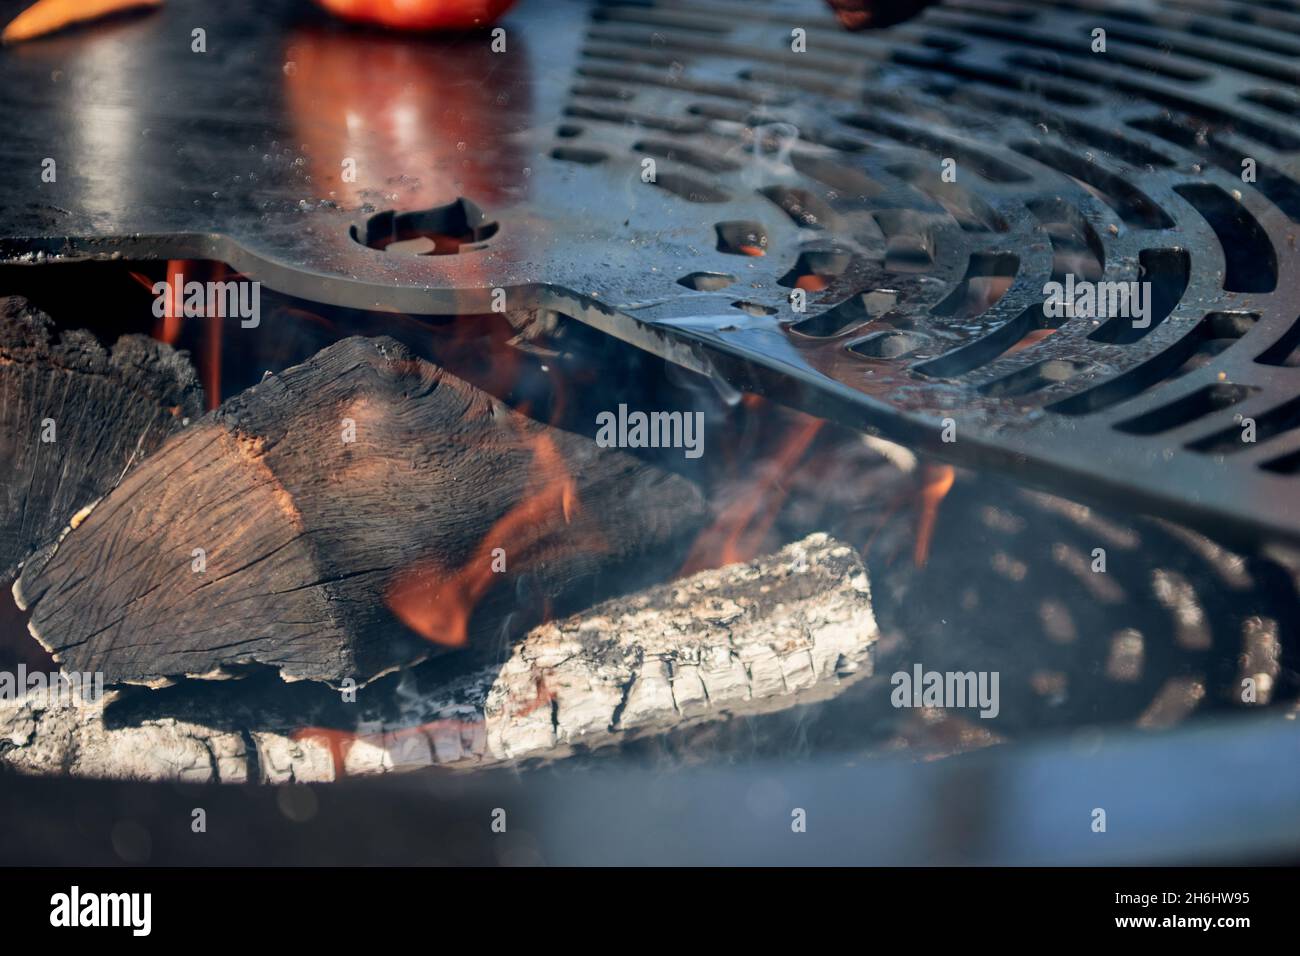 Charbon flamboyant dans une bouilloire Pit avec grille en fonte.Surface de cuisson ronde.Barbecue chaud avec grille en acier inoxydable sur le Backyard Ready Grill Banque D'Images